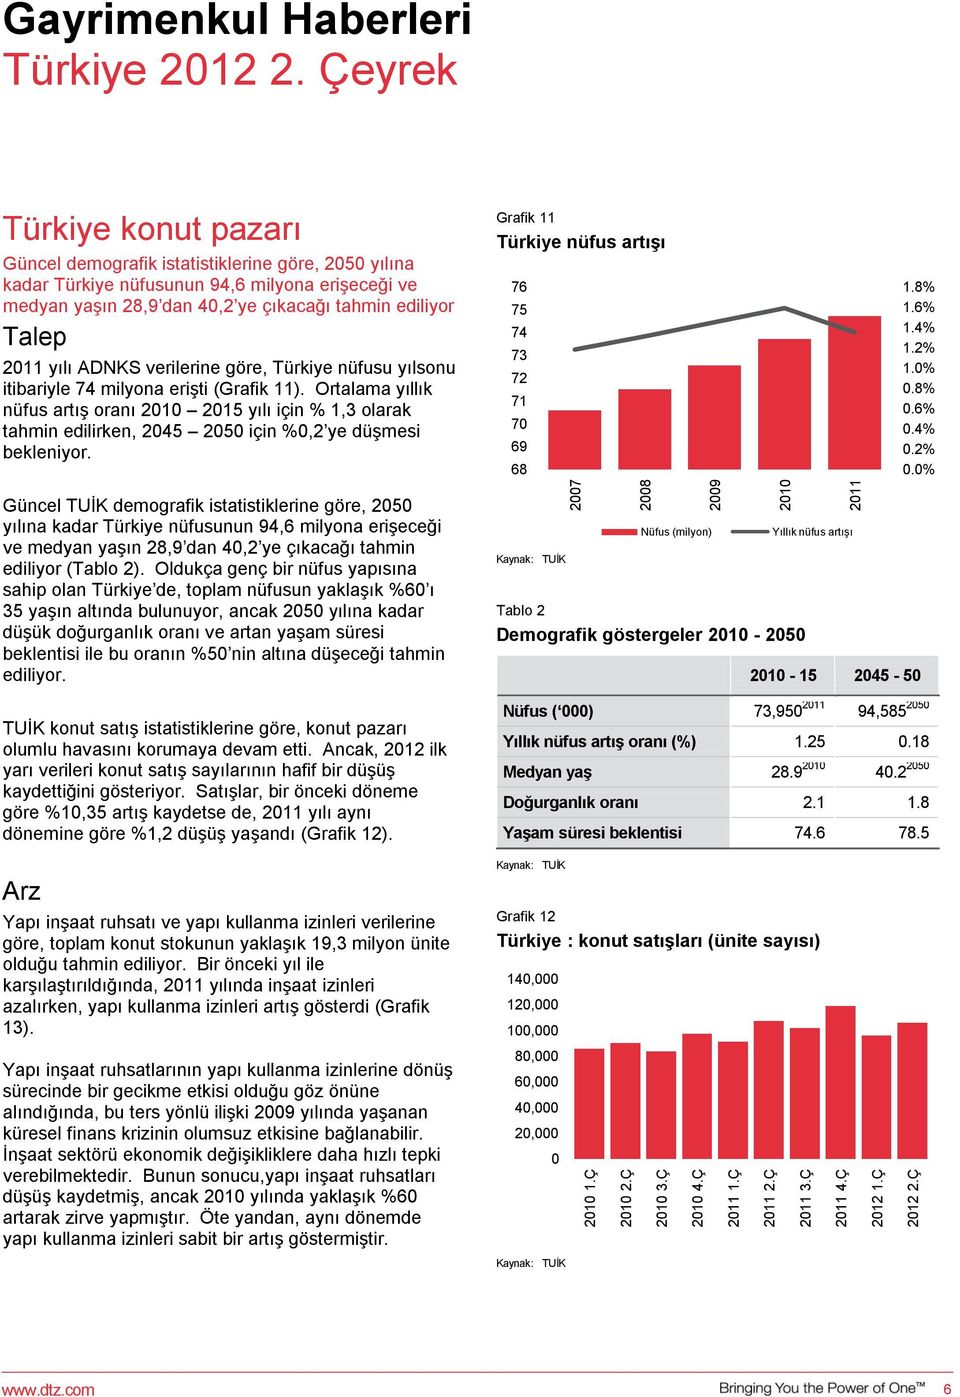 ADNKS verilerine göre, Türkiye nüfusu yılsonu itibariyle 74 milyona erişti (Grafik 11).